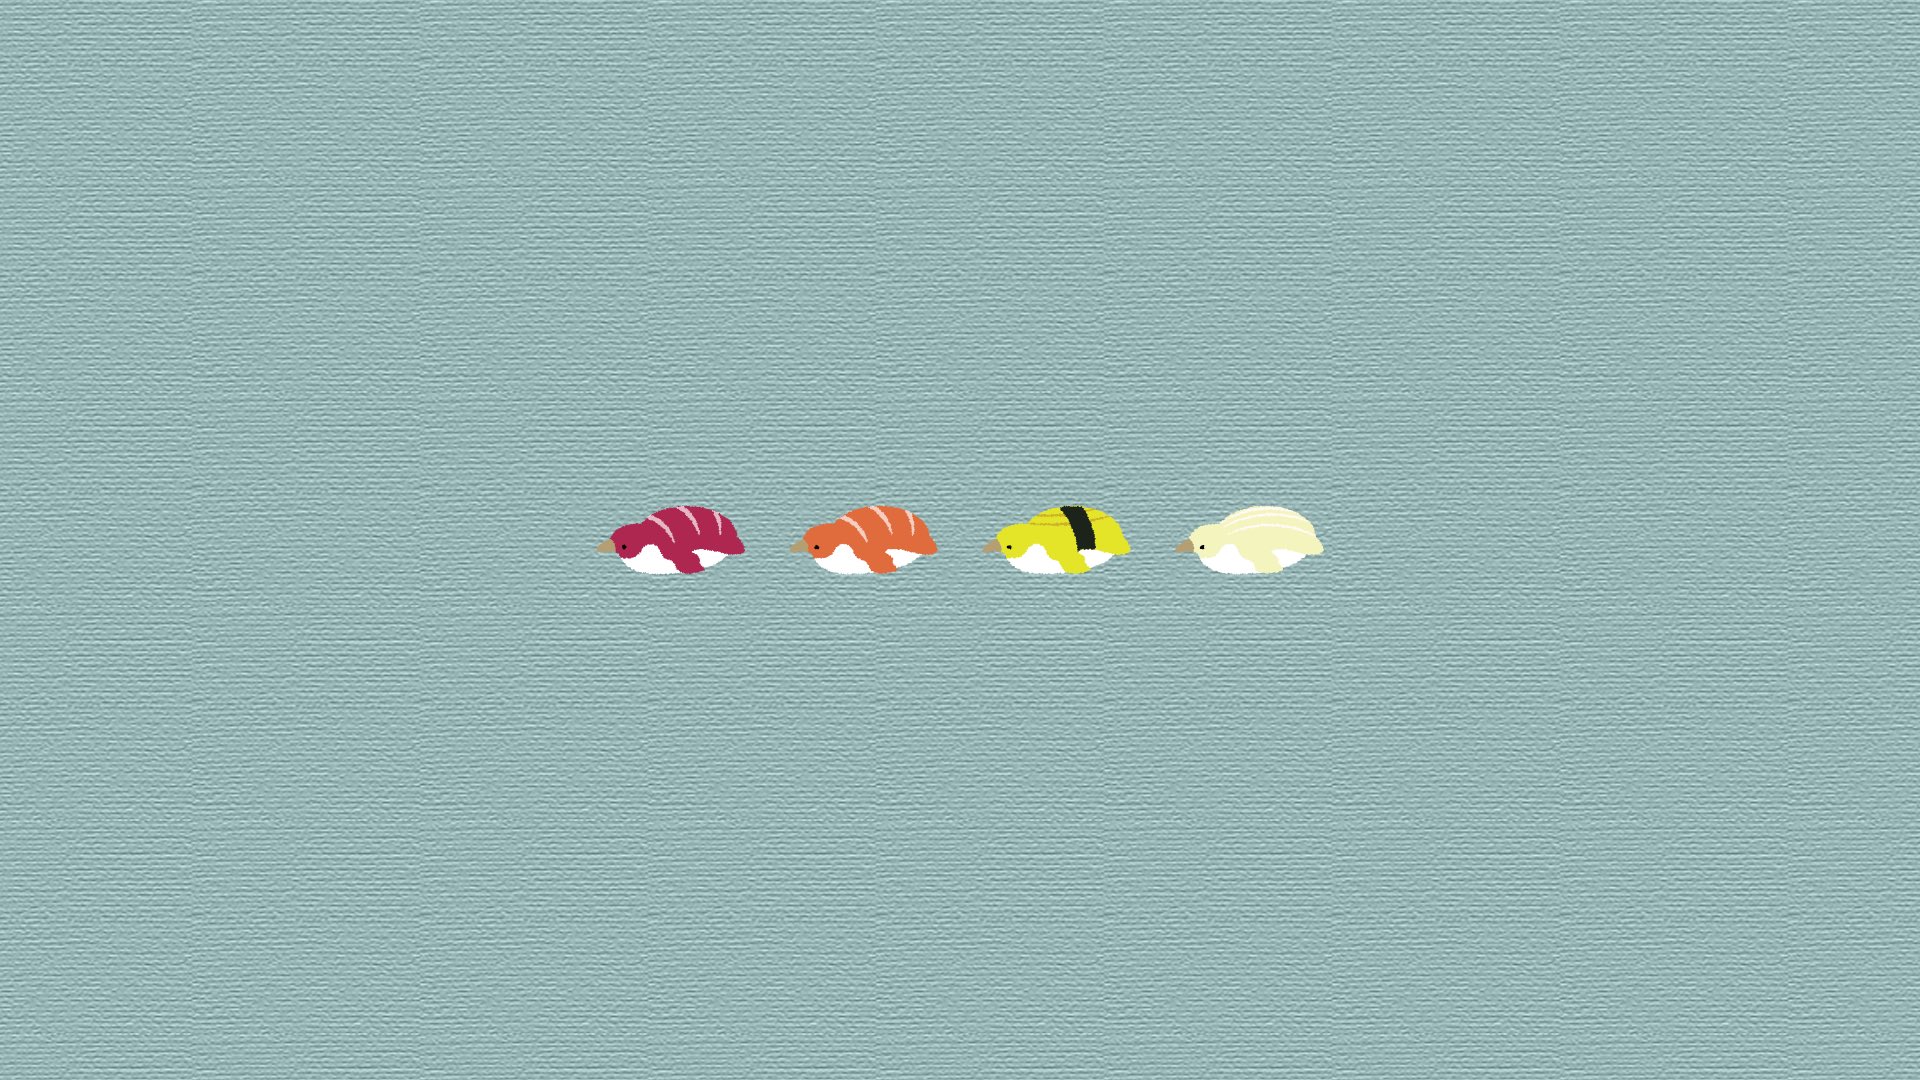 Numata すしみたいなペンギンの壁紙を作ったので 誰かに使っていただけるとテンションあがります イラスト 壁紙 Illustration ペンギン おすし イラスト好きな人と繋がりたい デスクトップ背景 スシロー行きたい Sushi T Co Plvsnrr9hl